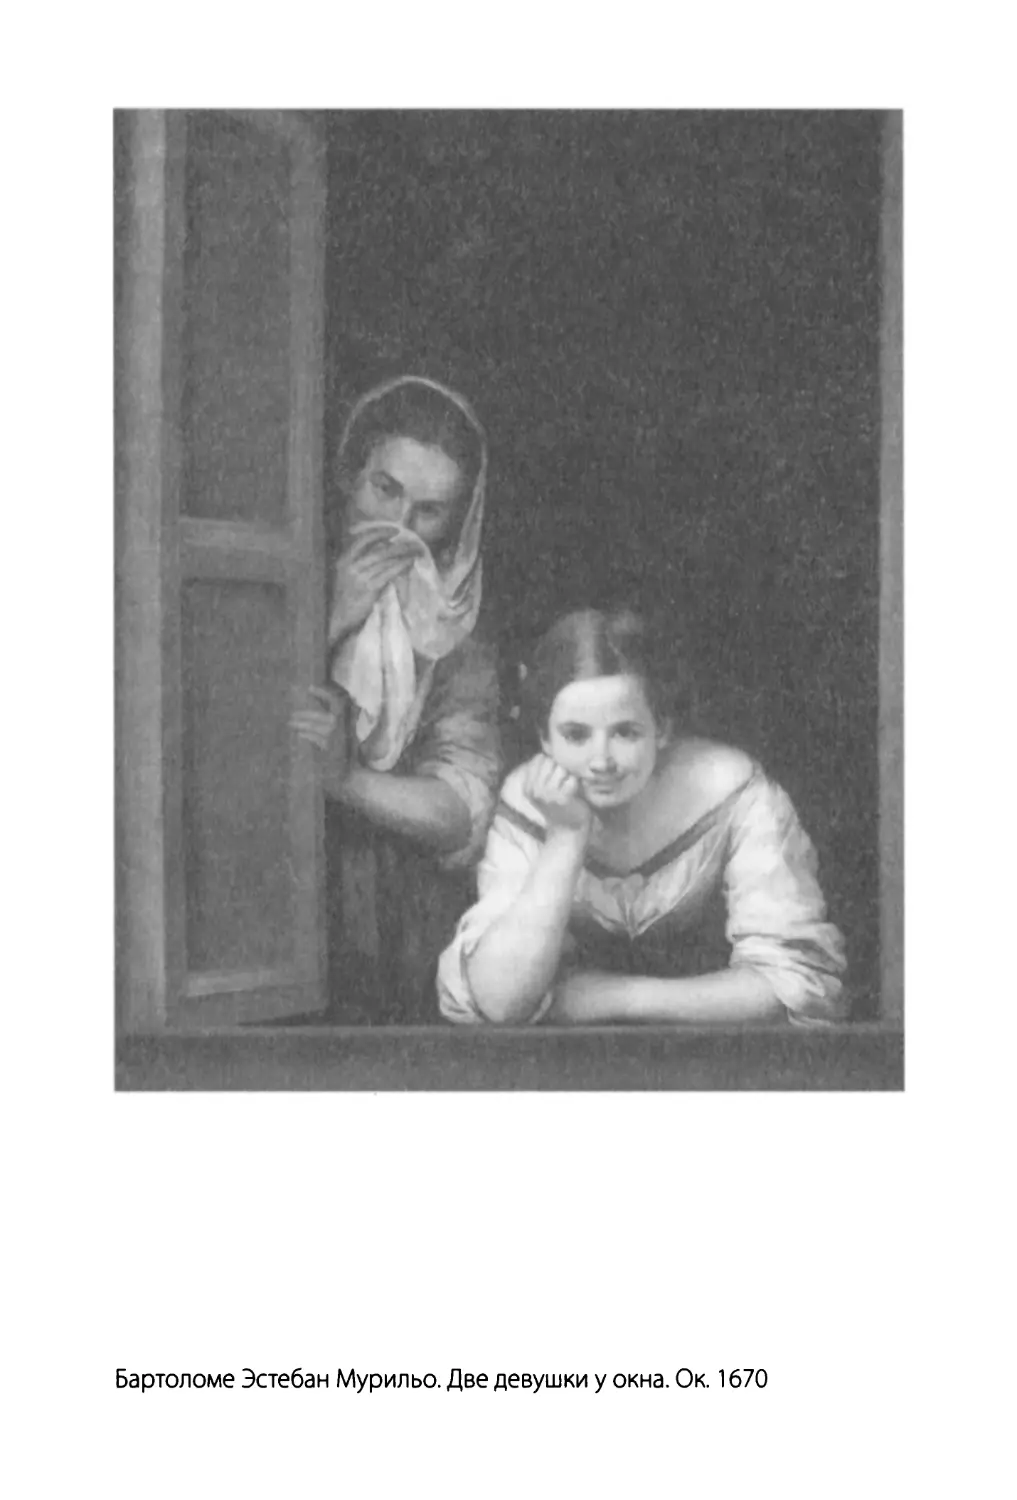 Бартоломе Эстебан Мурильо. Две девушки у окна. Ок.1670. Вашингтон. Национальная галерея искусства.